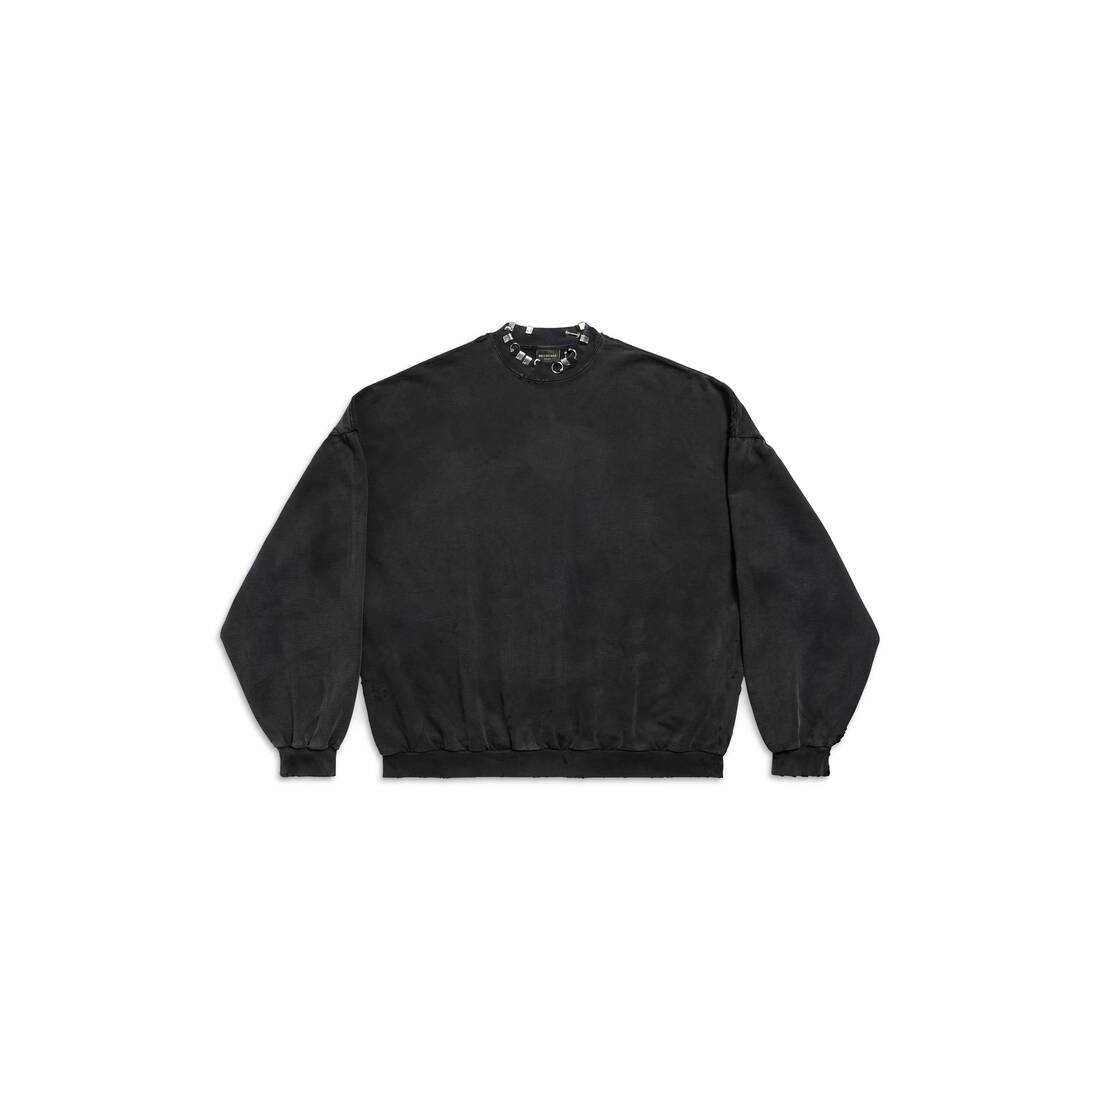 Pierced Round Sweatshirt Oversized in Black Faded